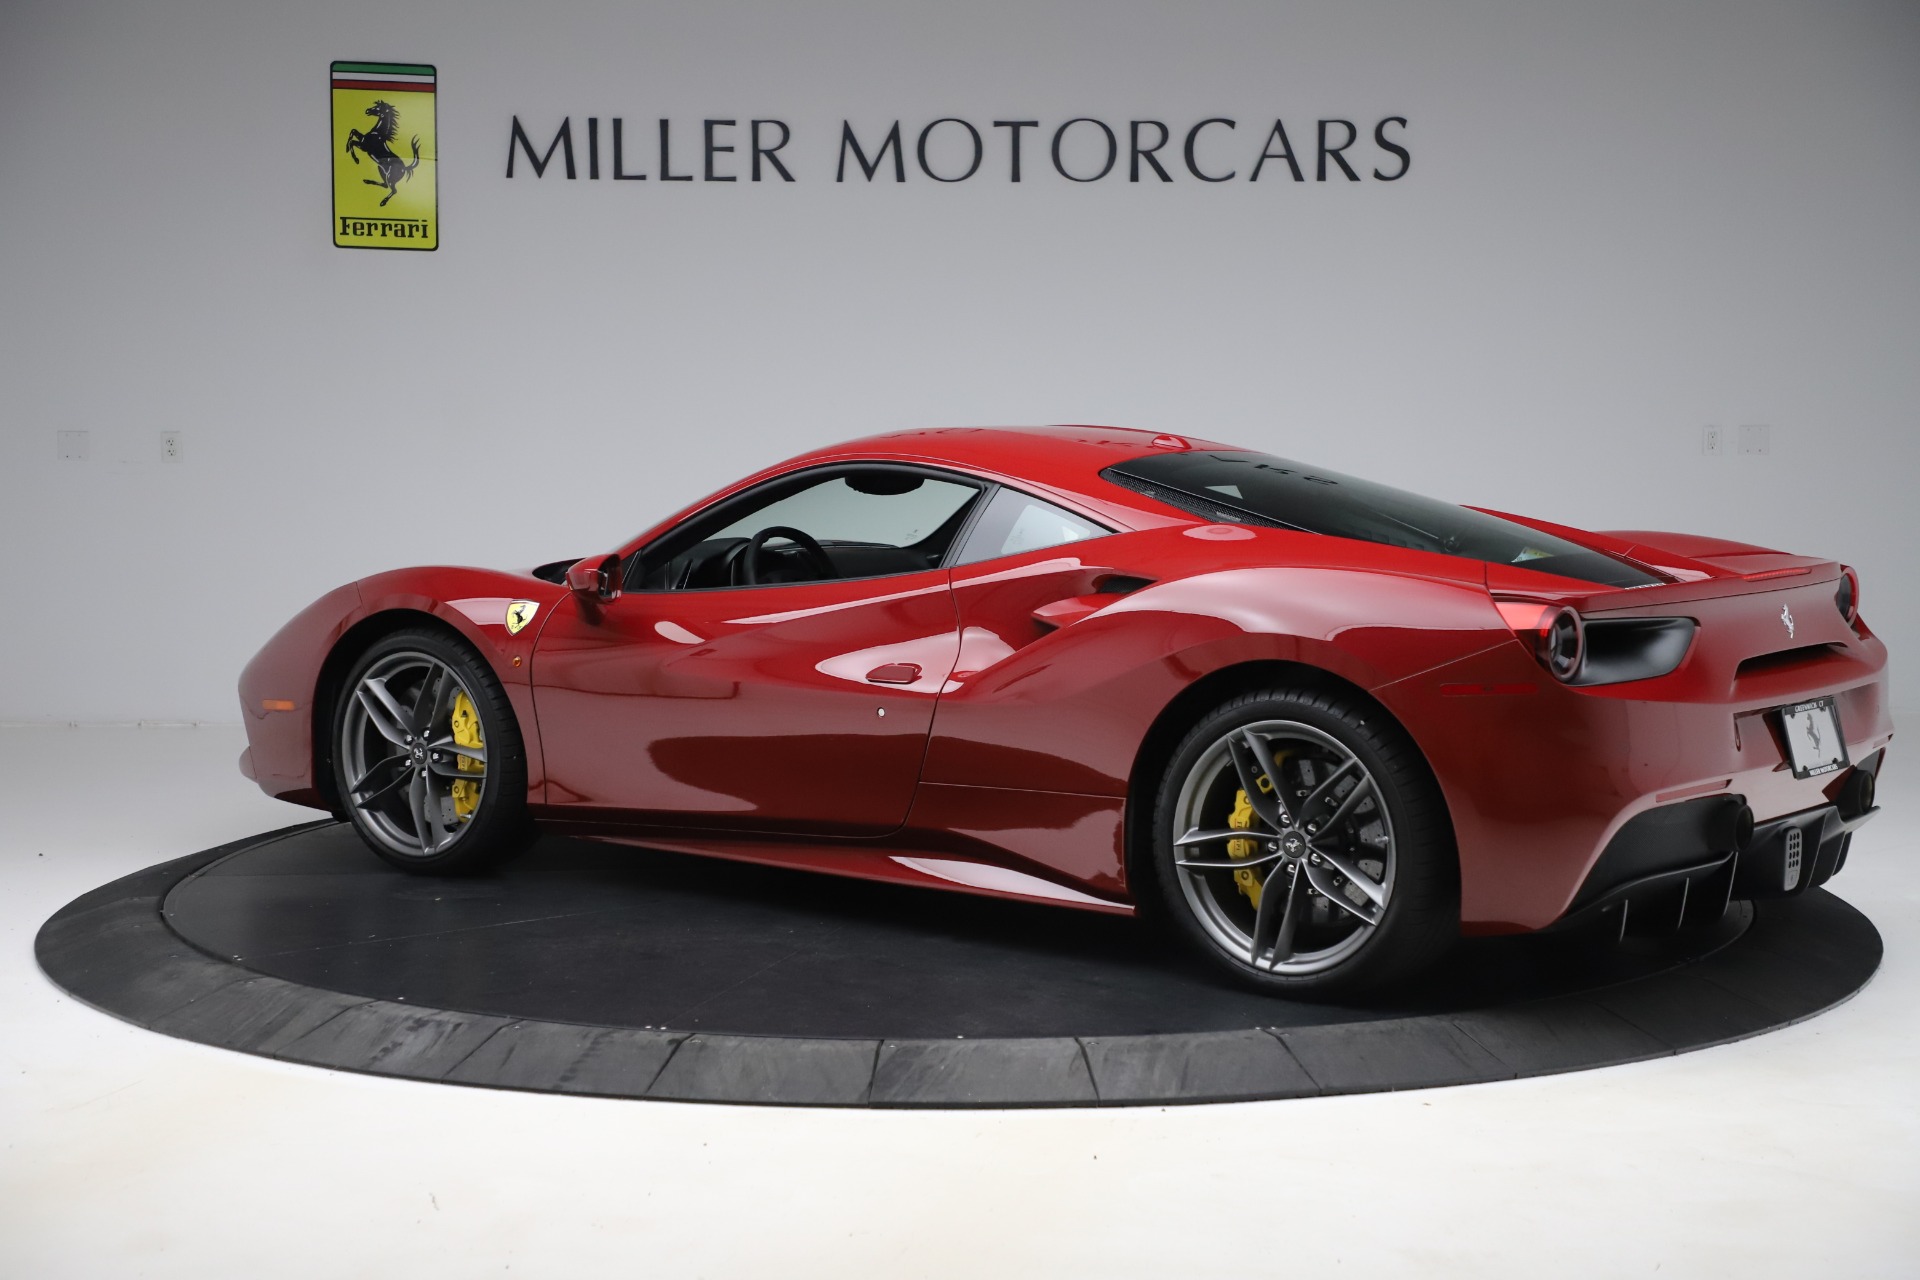 Pre Owned 2019 Ferrari 488 Gtb For Sale Miller Motorcars Stock F1998b